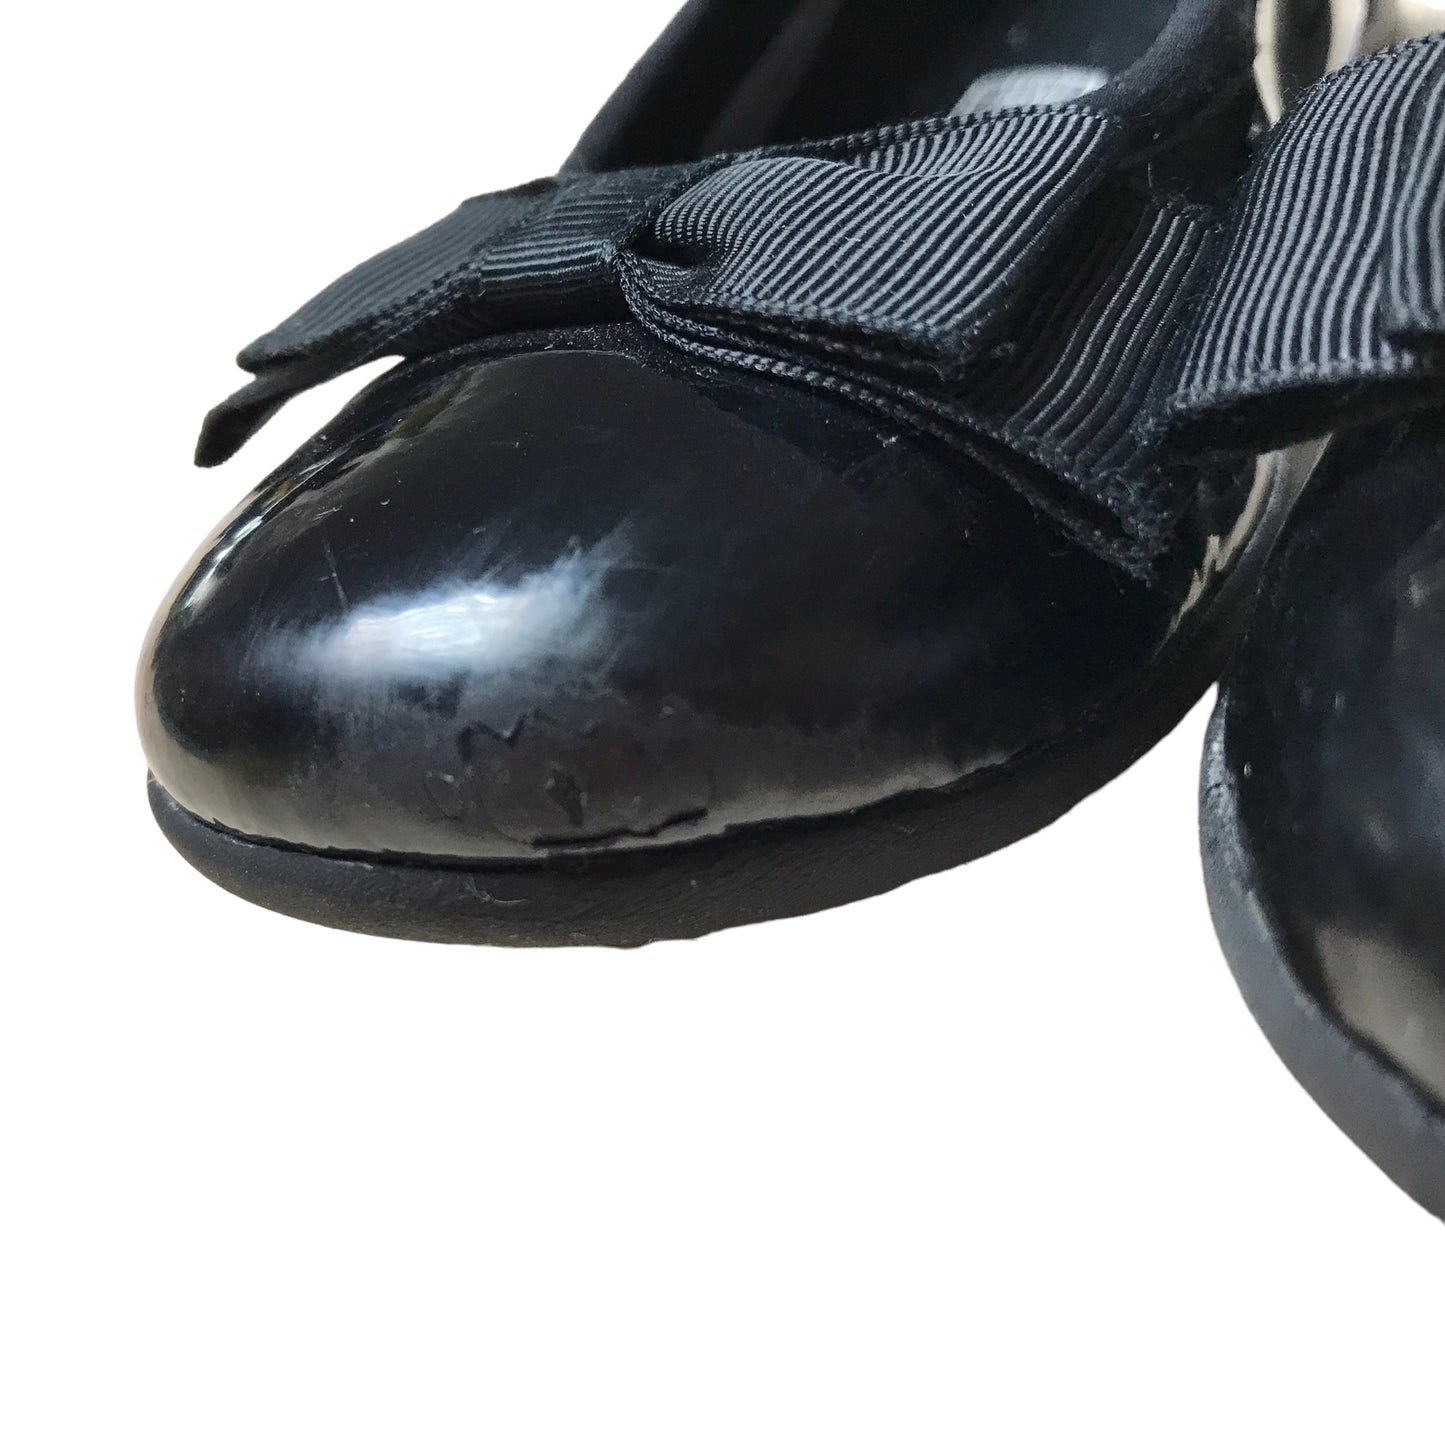 Clarks Black Bowtie School Shoes Shoe Size 11.5F junior